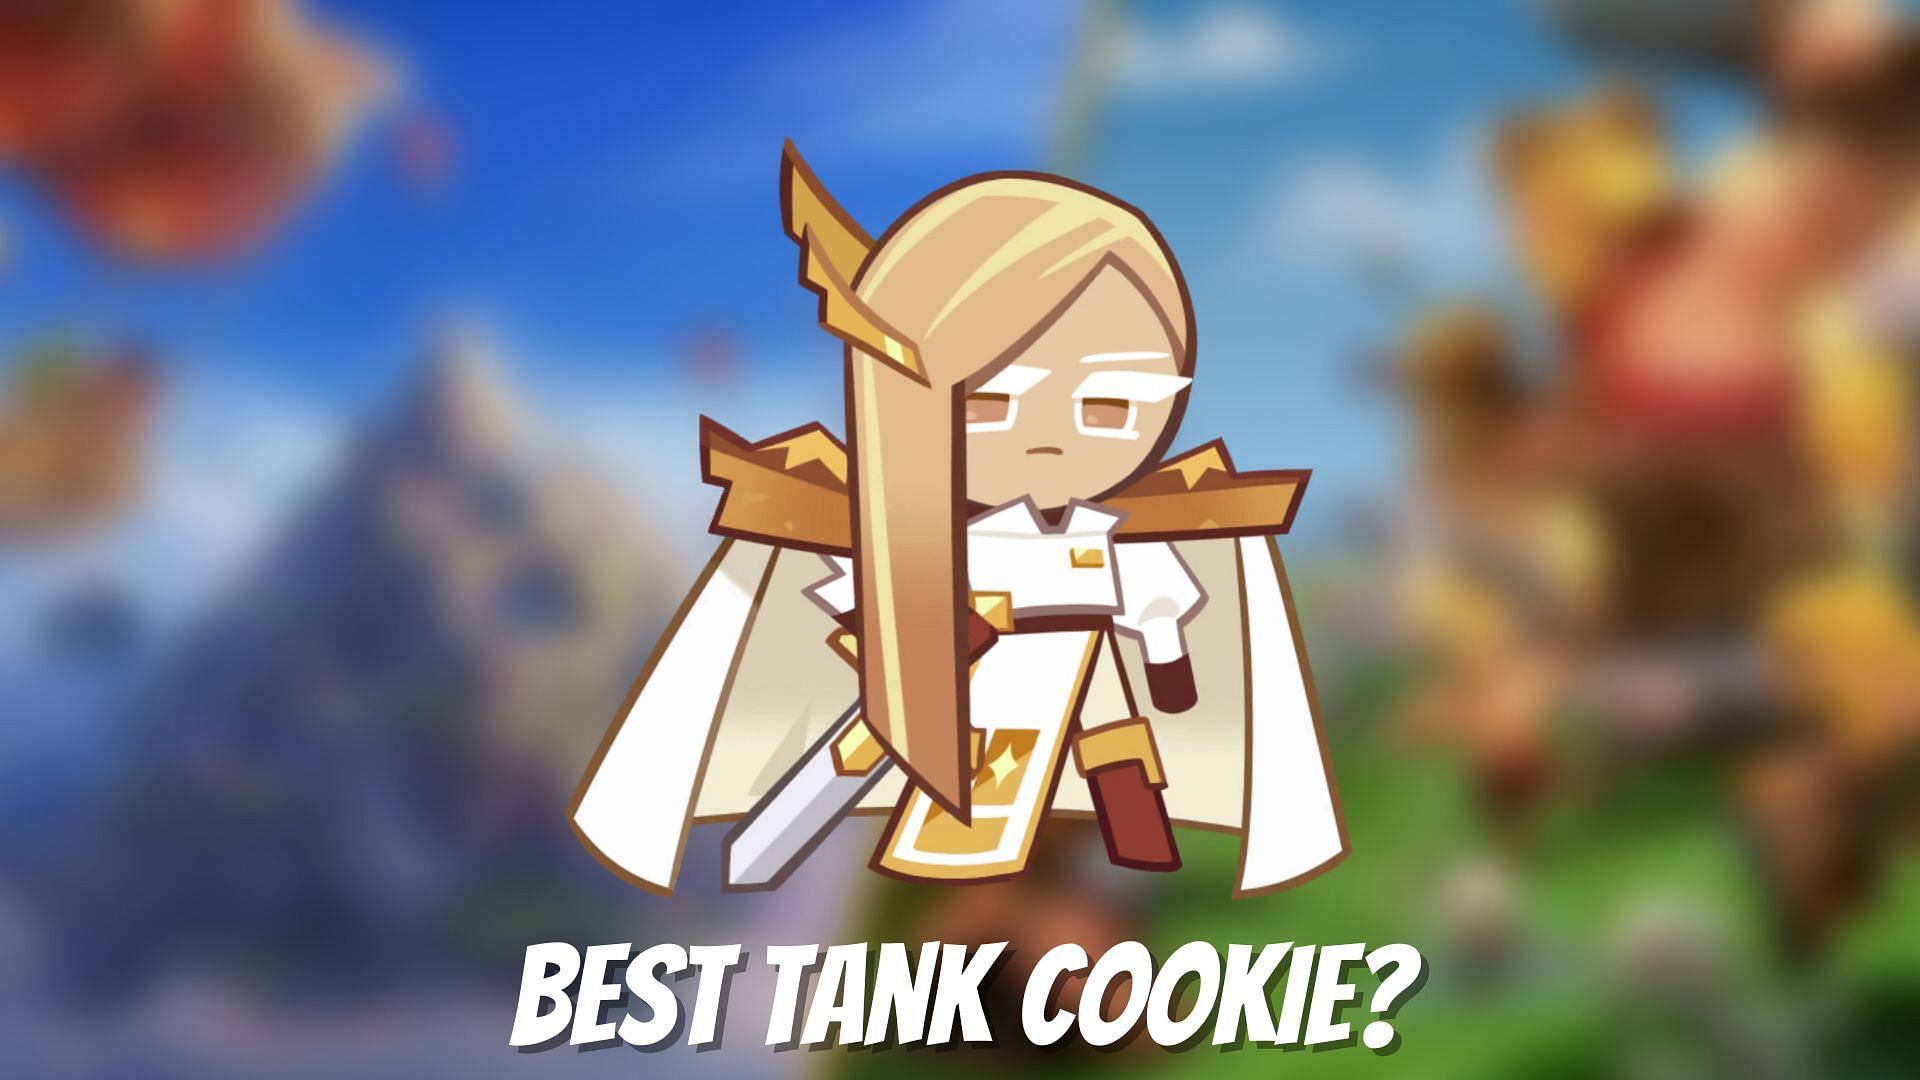 Financier Cookie has quickly become a fan favorite (Image via Sportskeeda)